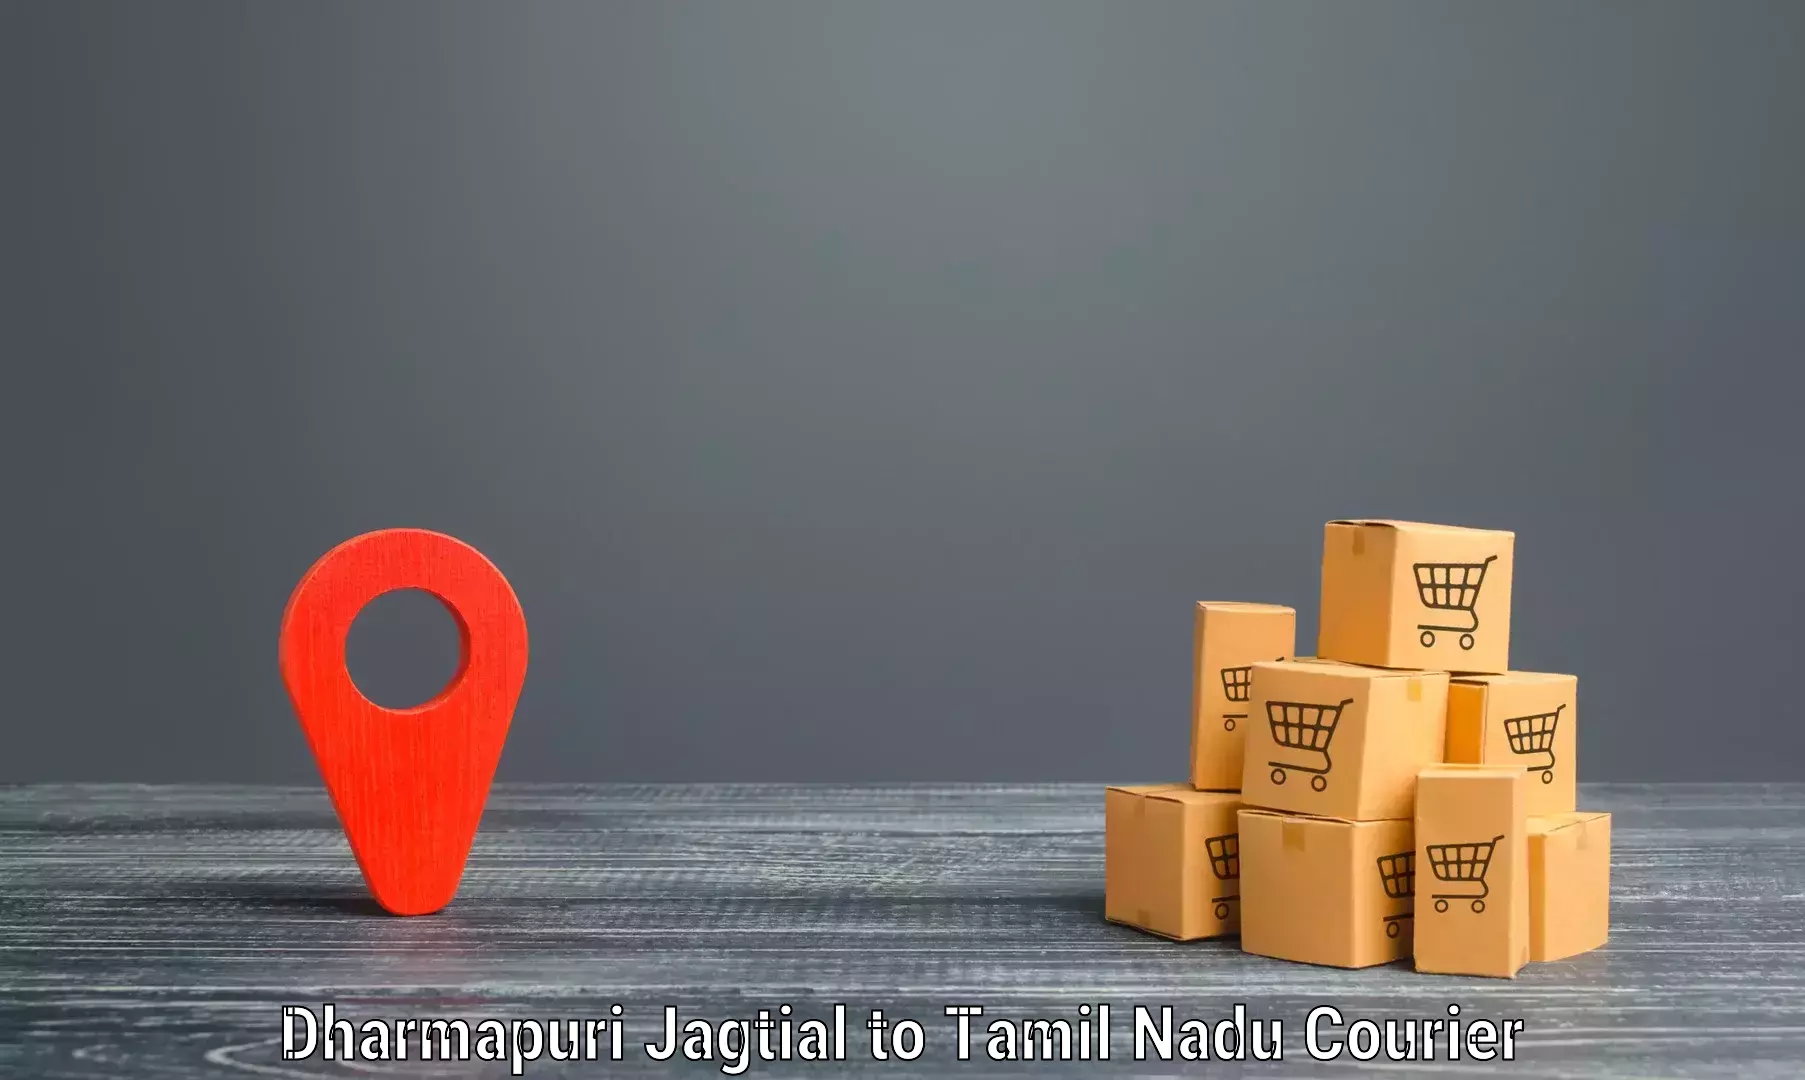 Easy return solutions in Dharmapuri Jagtial to Kovilpatti